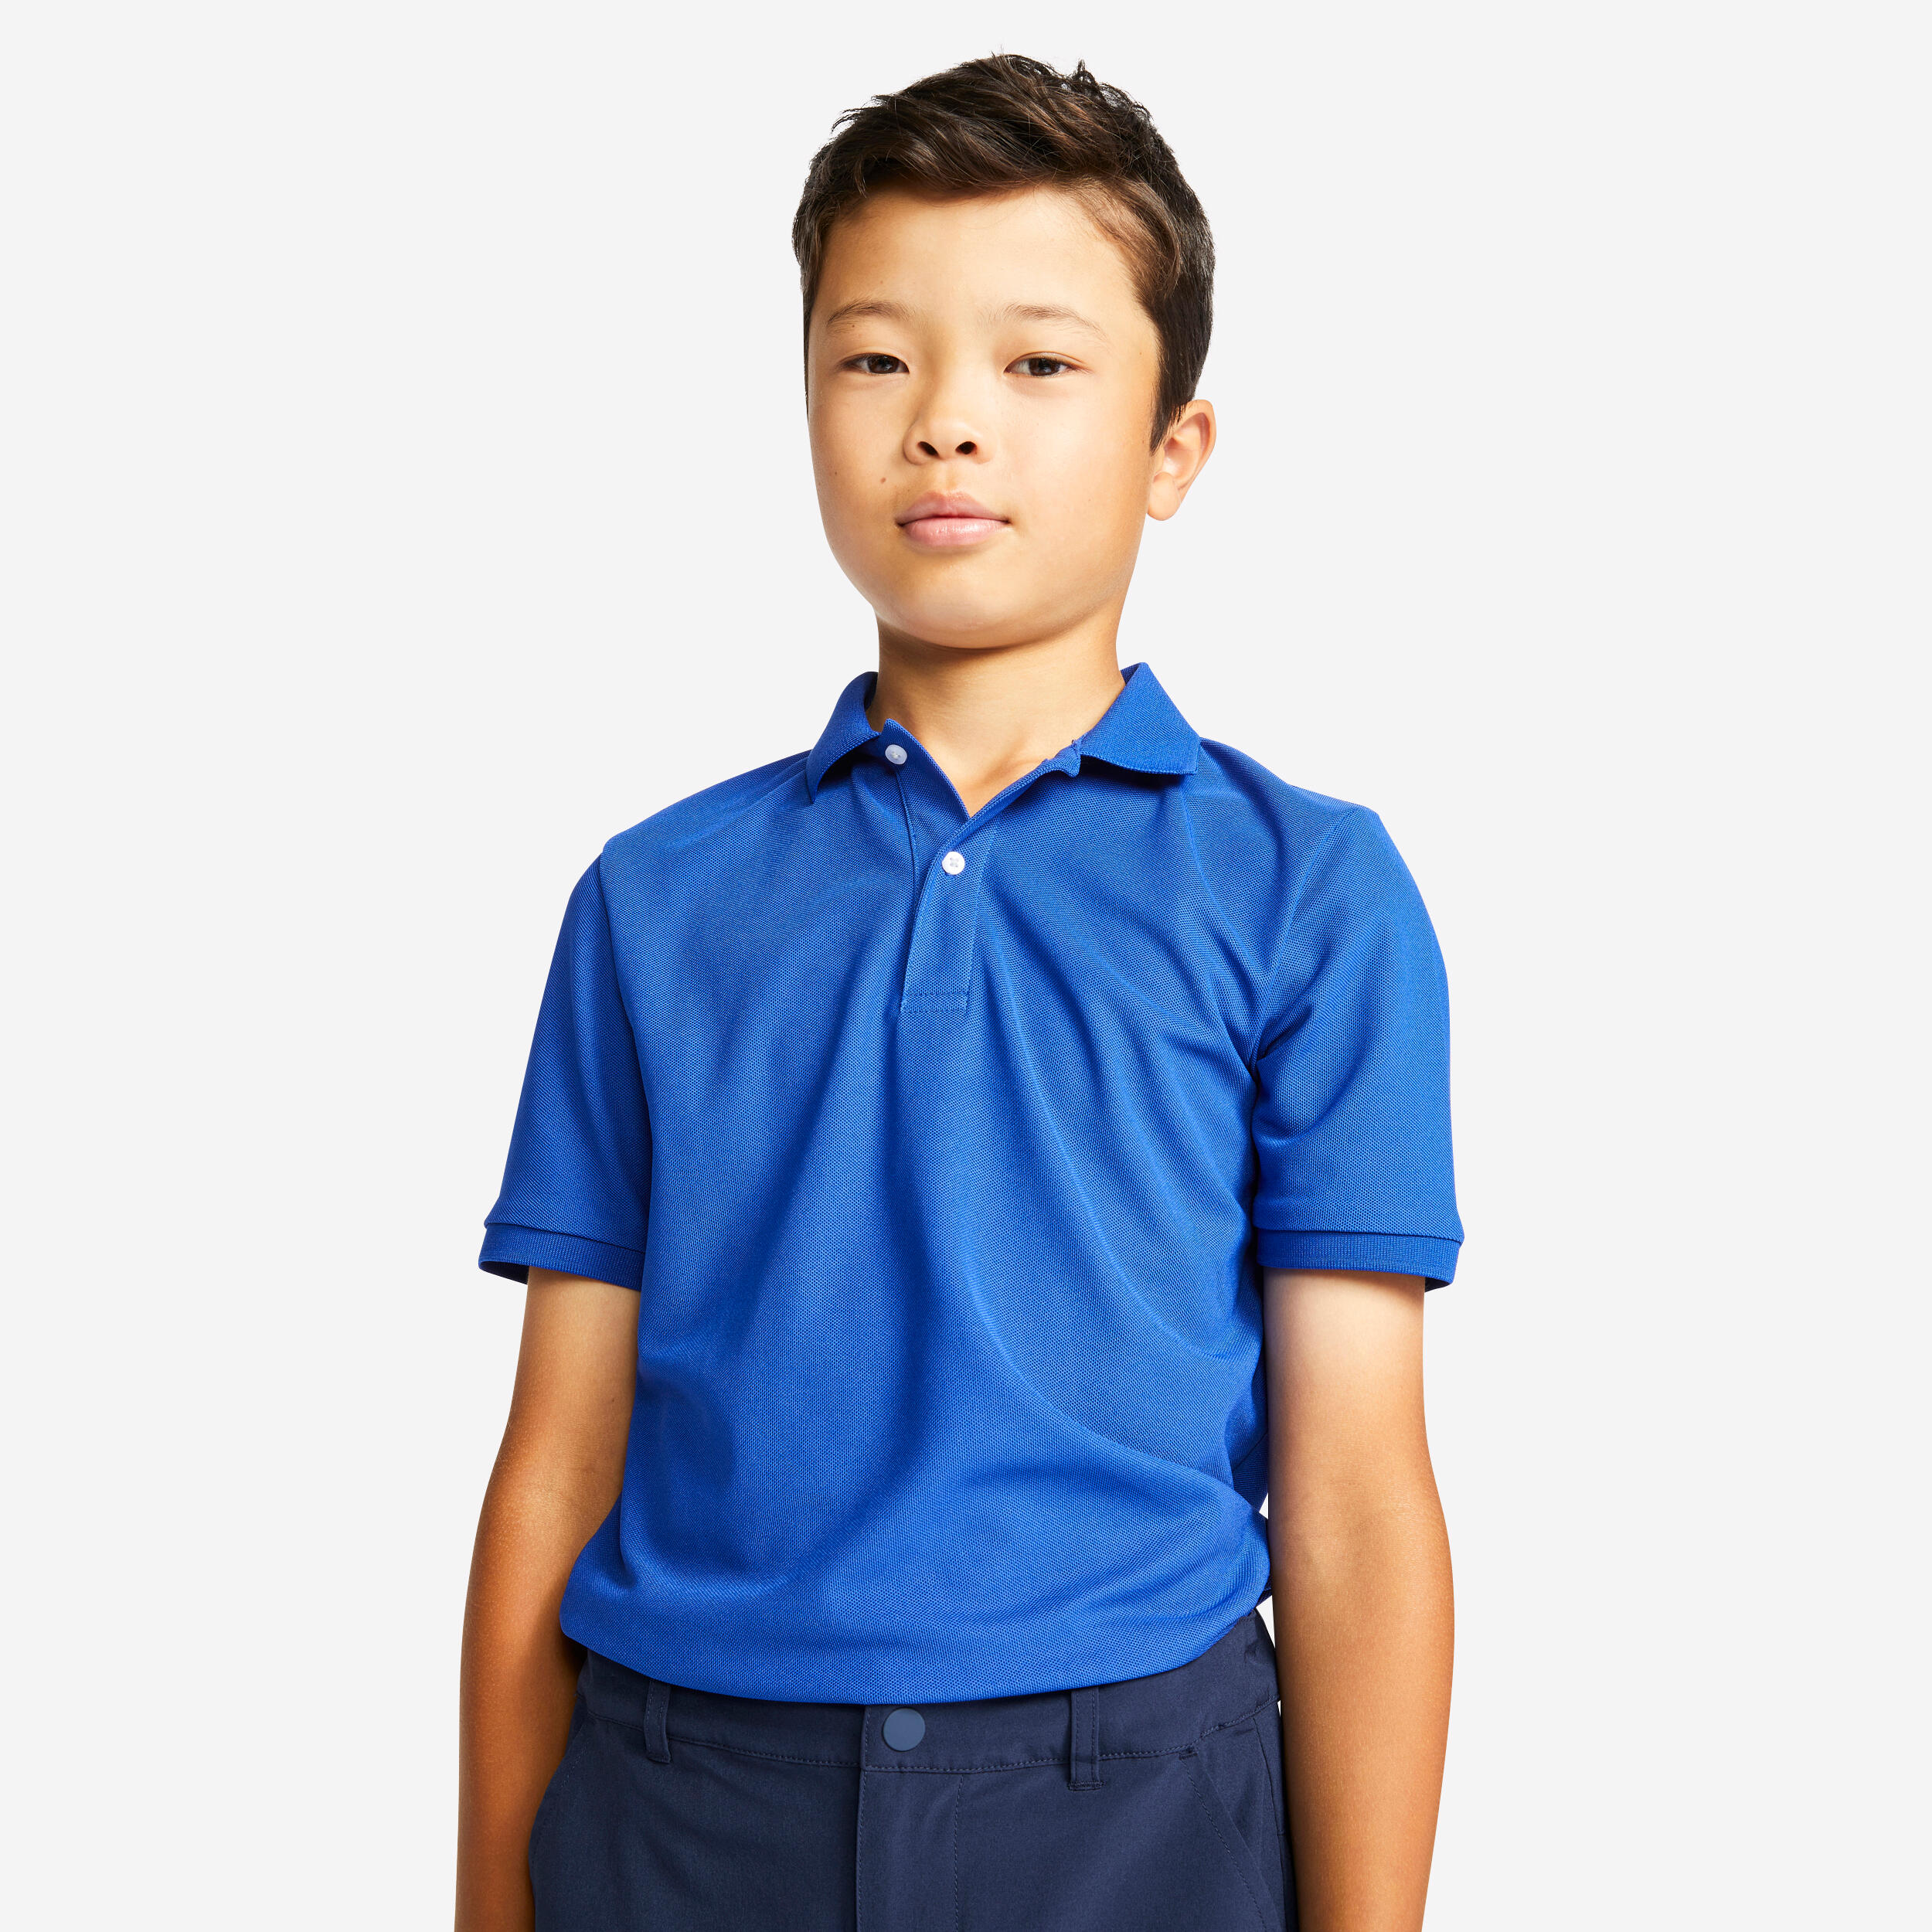 BLUE SEVEN Kinder Jungen Polo Shirt Poloshirt Polohemd Kurzarm T-Shirt Junior